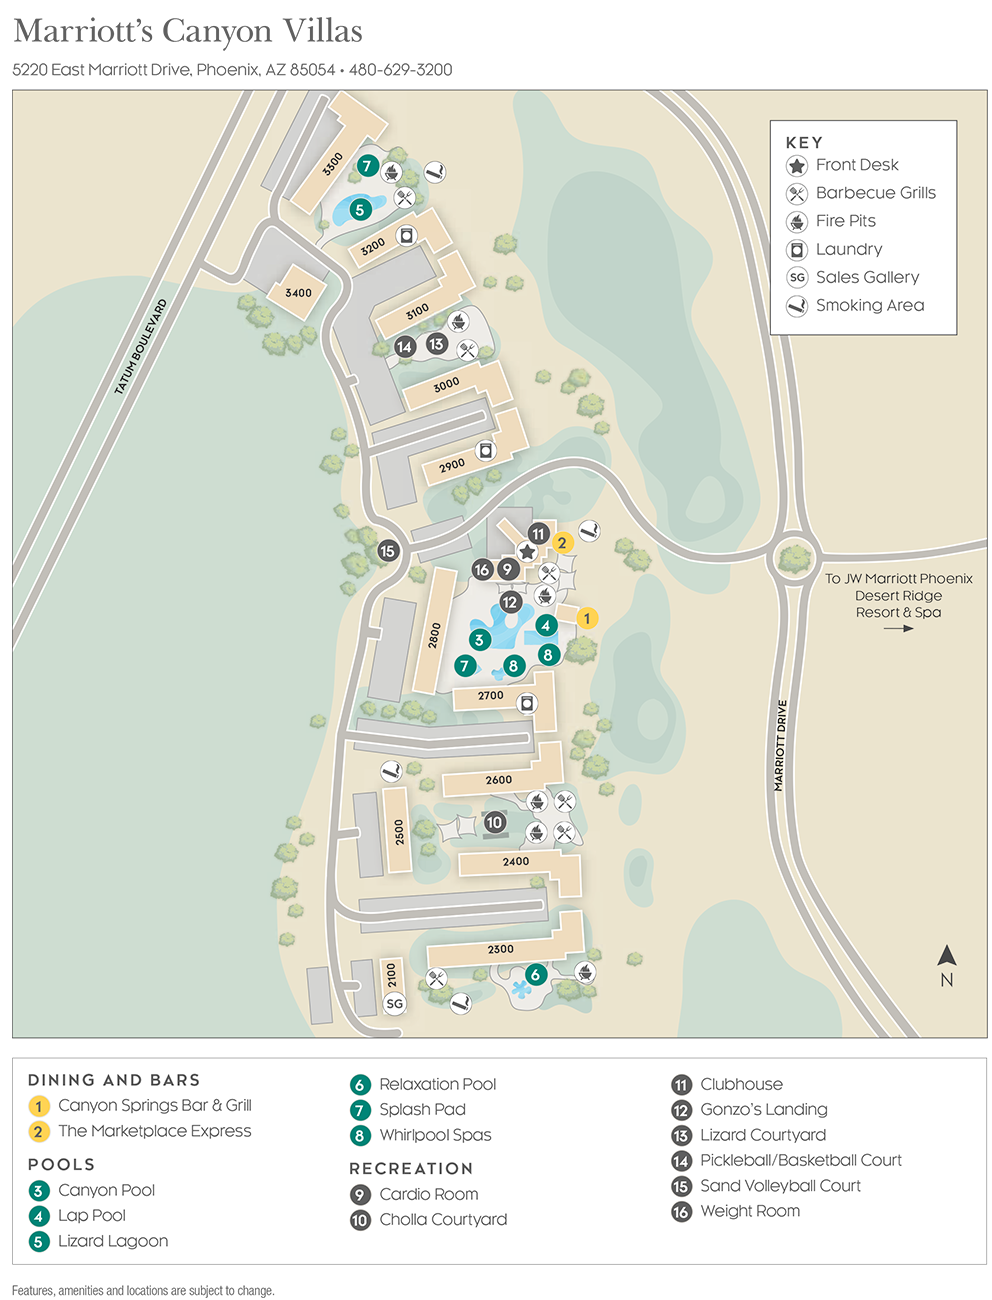 Marriott Canyon Villas Resort Map